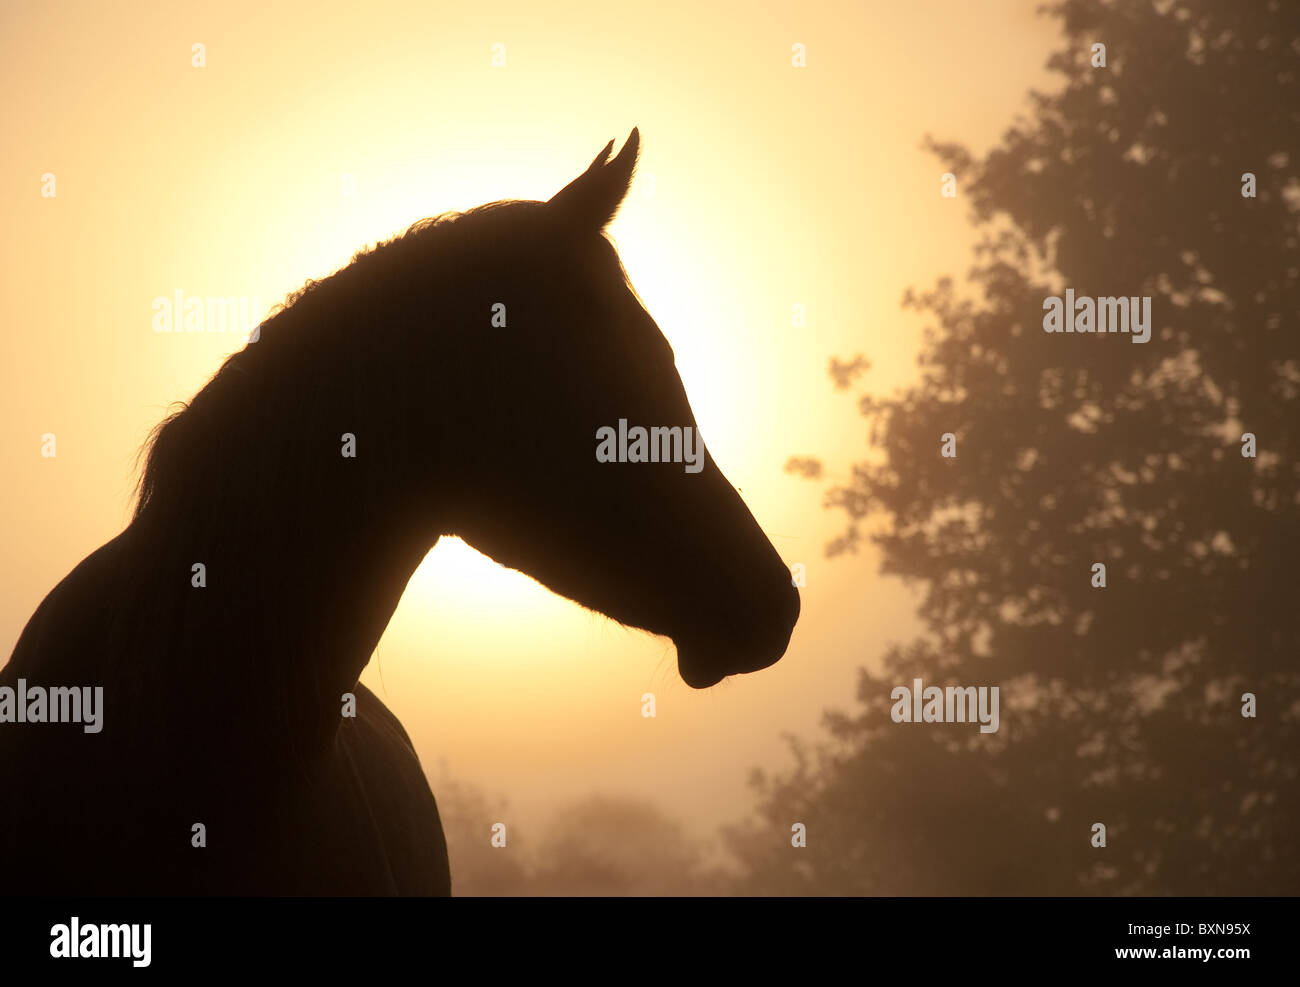 Schönes Bild von einer edlen arabischen Pferdes Profil gegen Nebel und Sonnenaufgang in Sepia Klangfülle Stockfoto